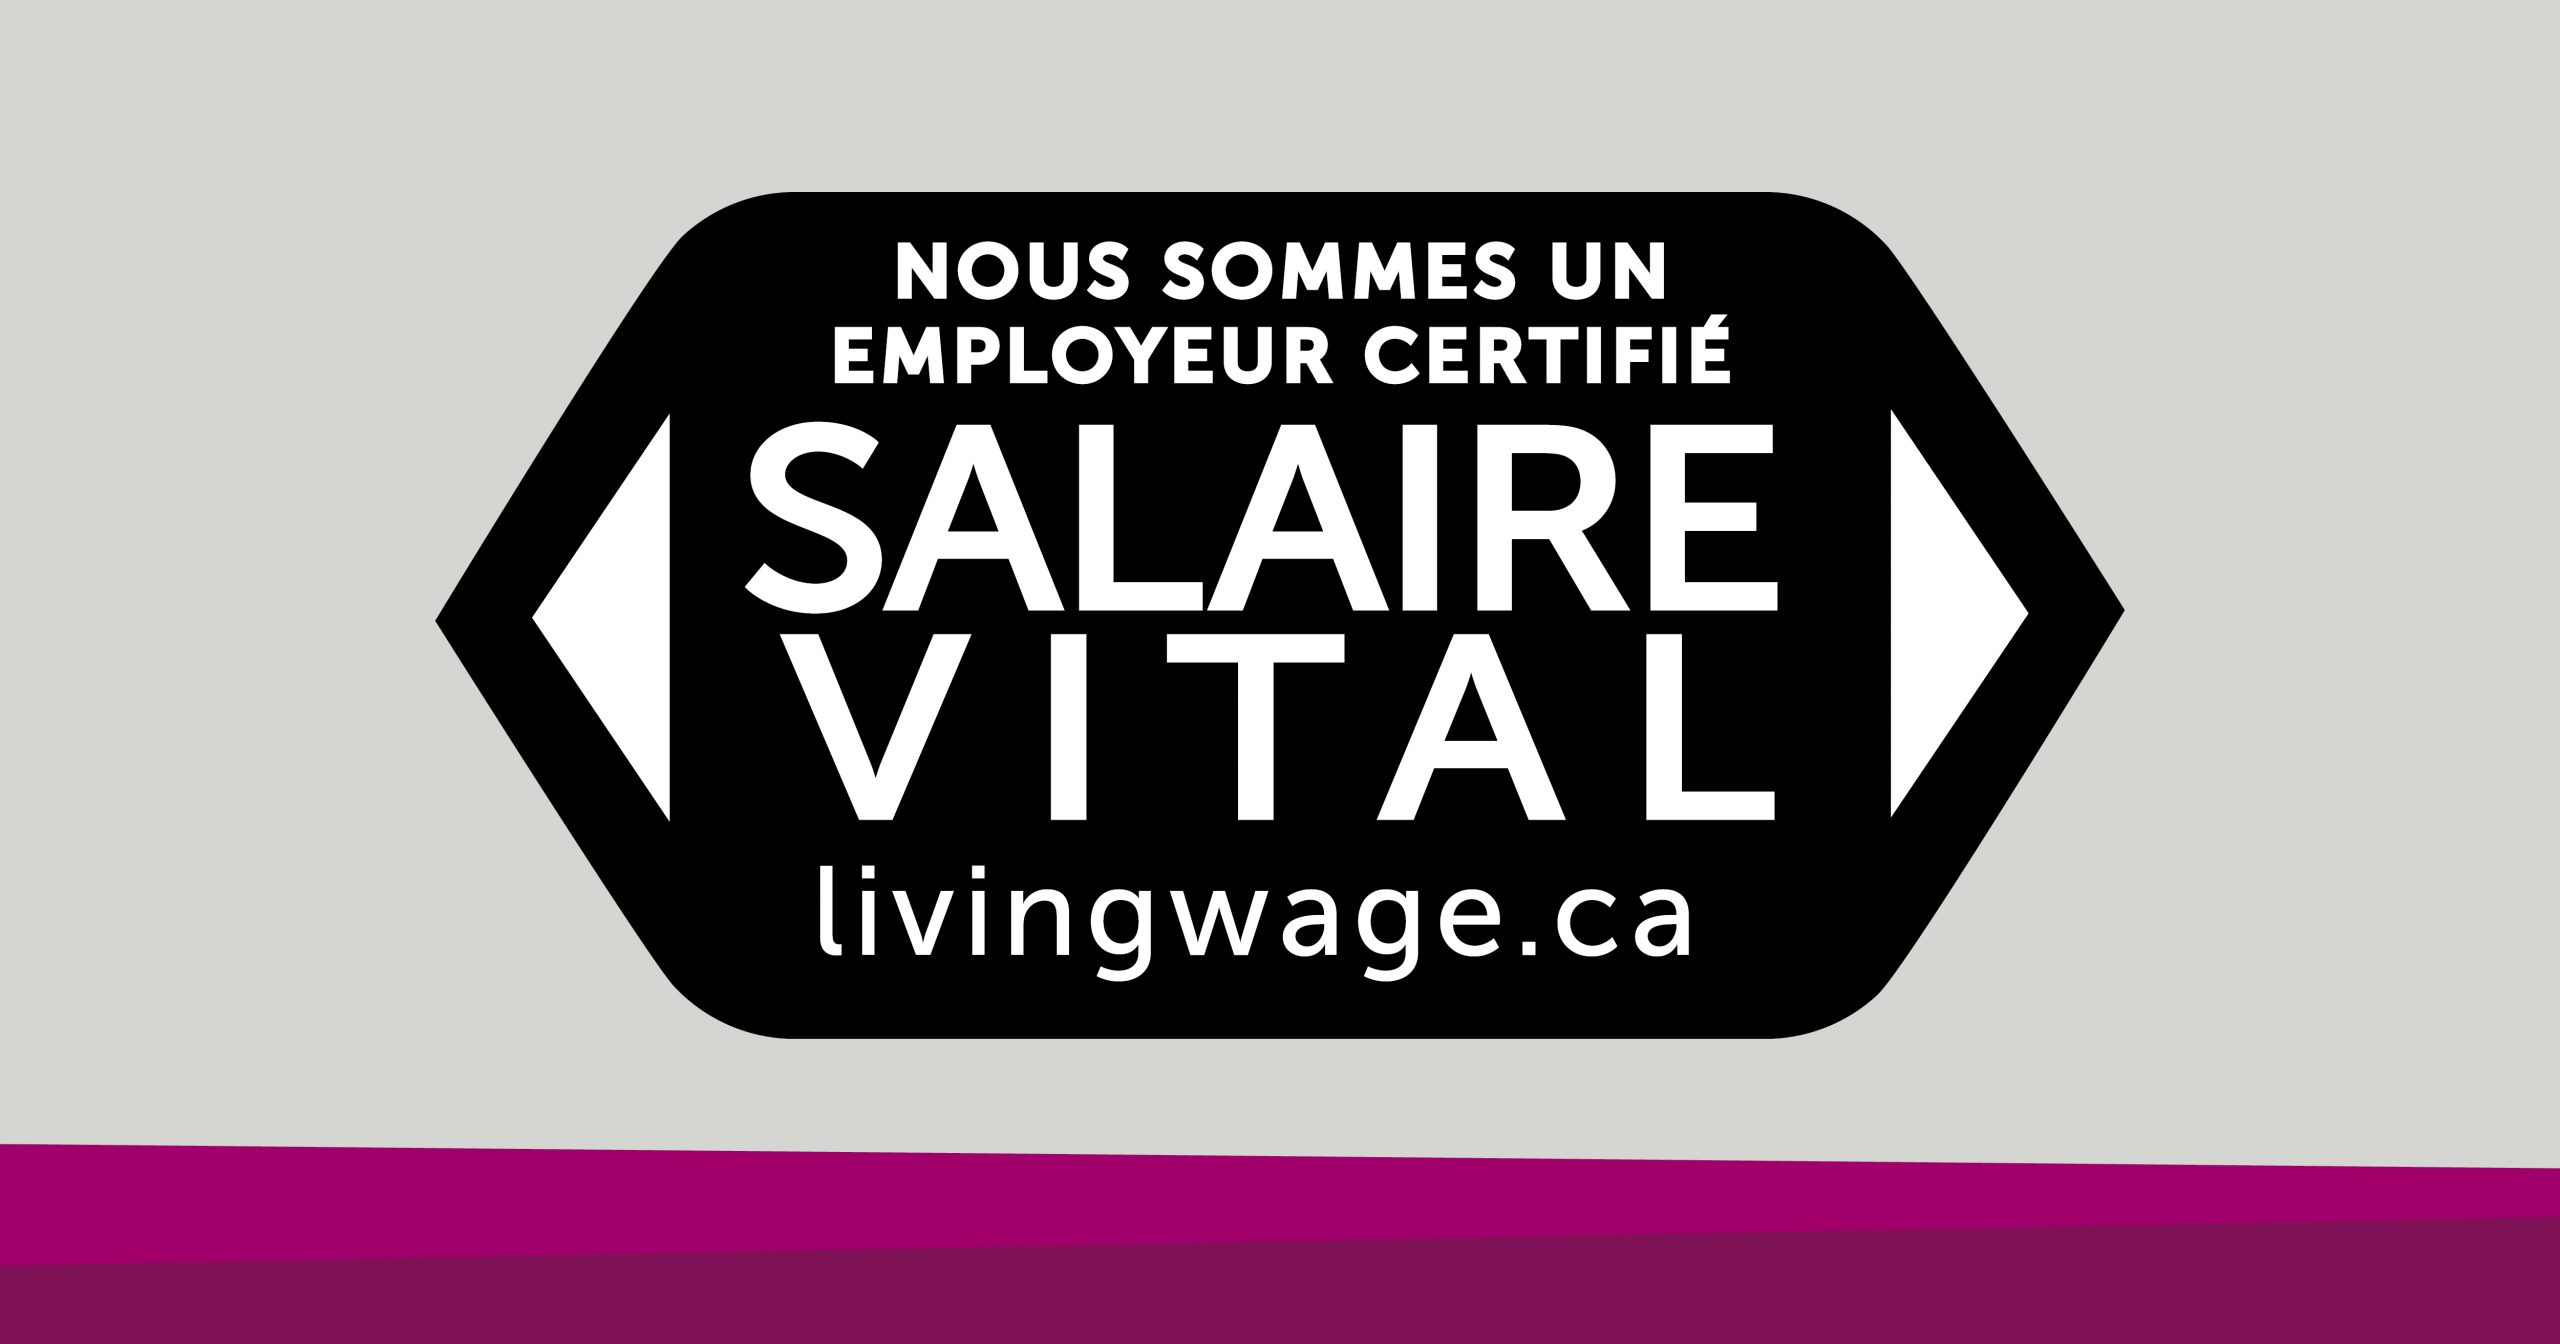 Nous sommes un employer certifié salaire vital. livingwage.ca